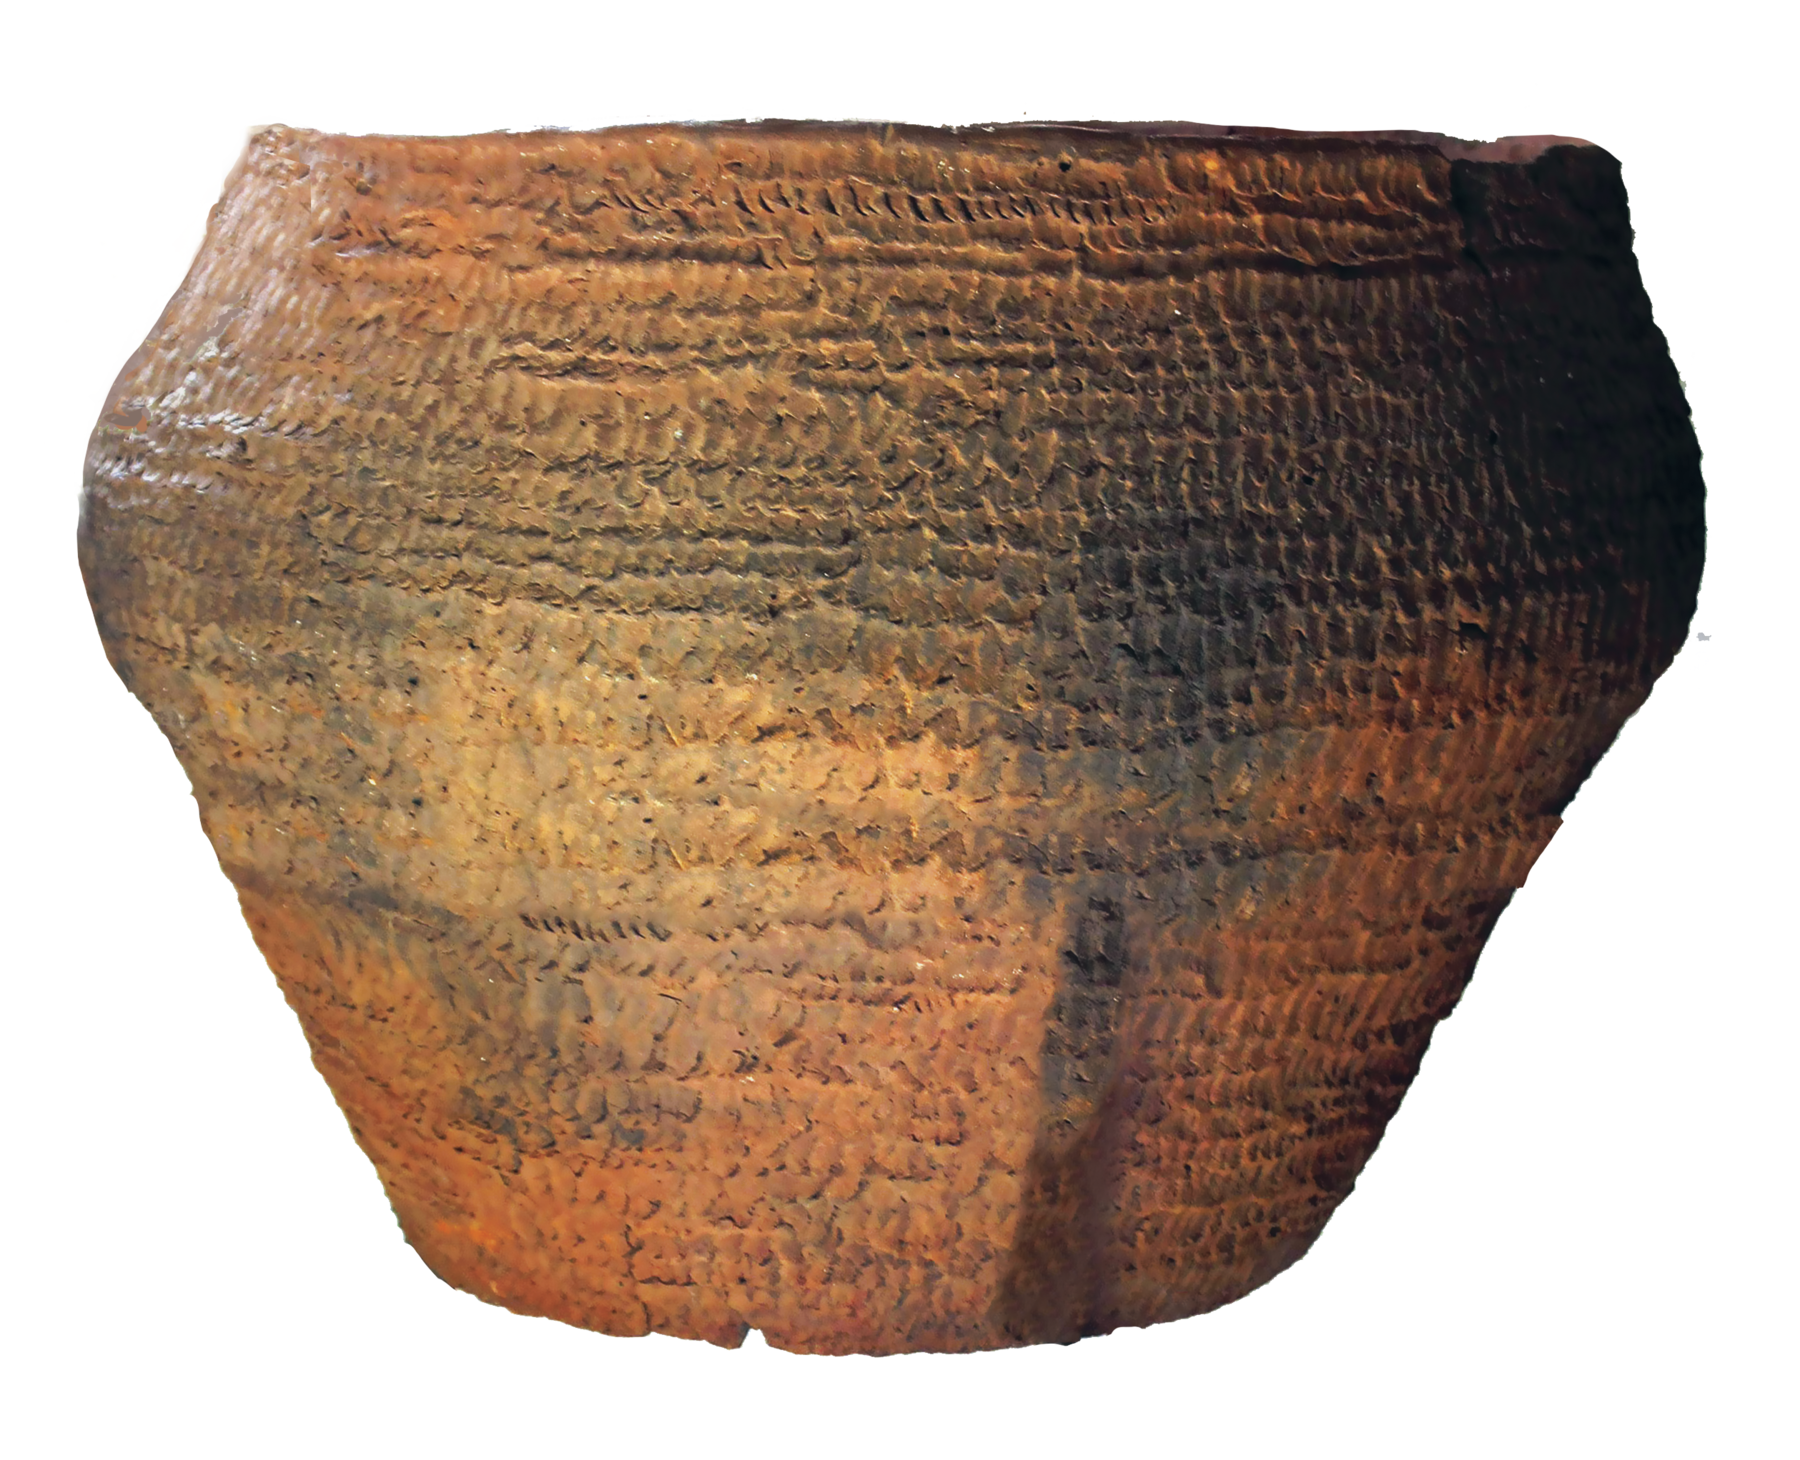 Cerâmica. Uma urna de formato oval, com base de menor diâmetro que o corpo e coloração amarronzada.